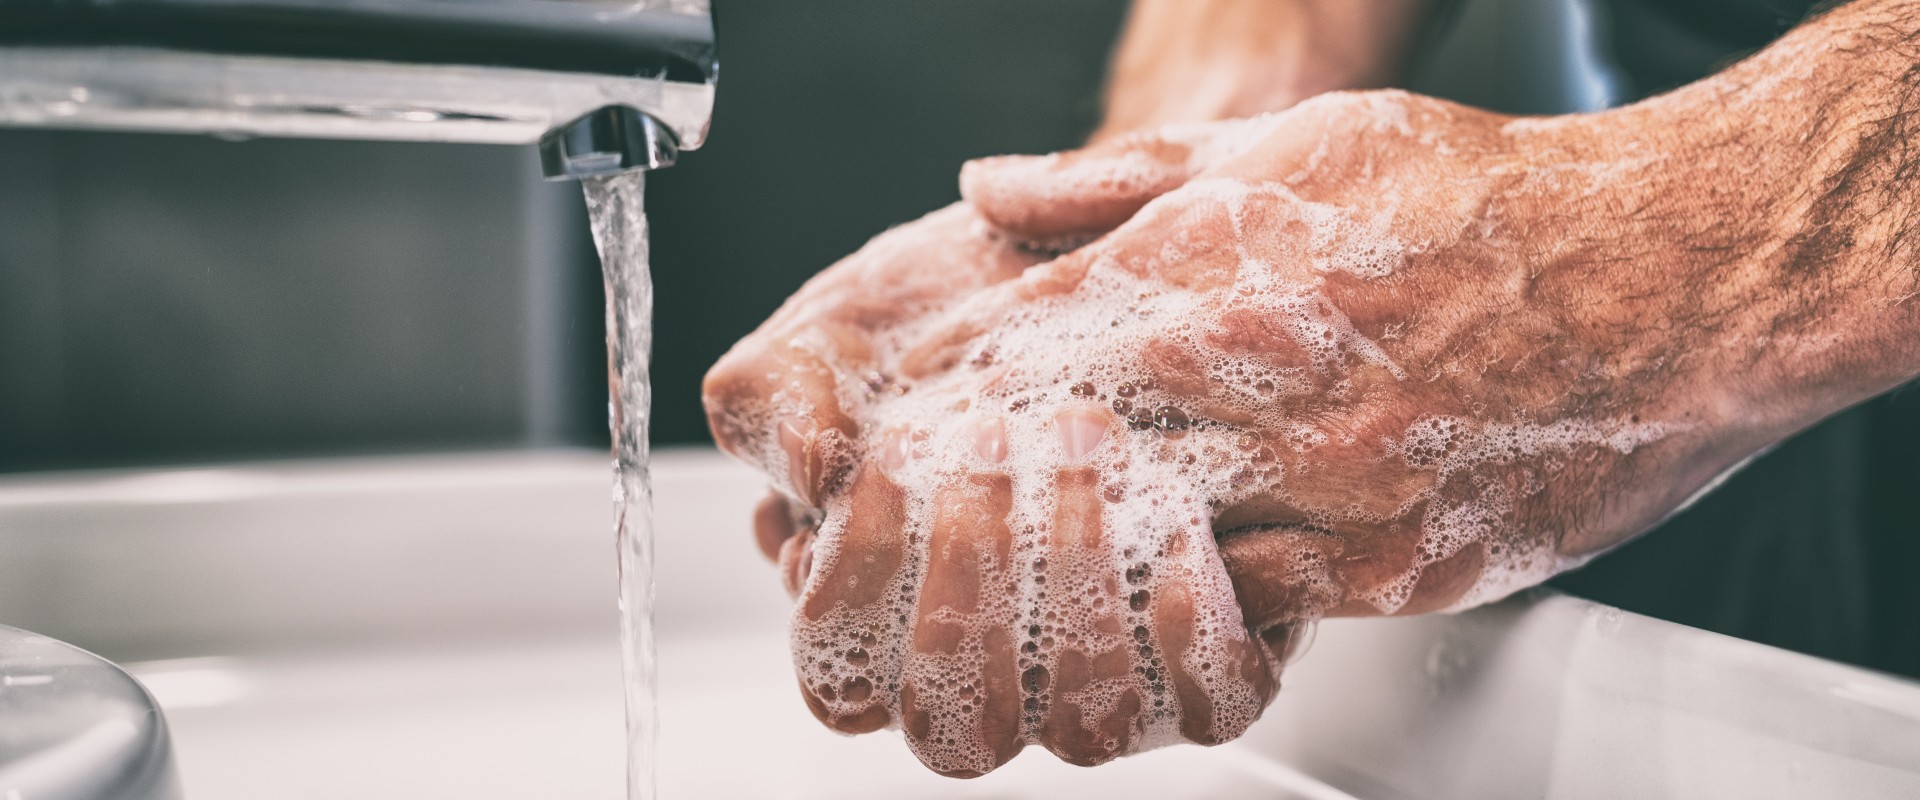 ¿Cómo sacarle más partido a nuestra higiene cotidiana?